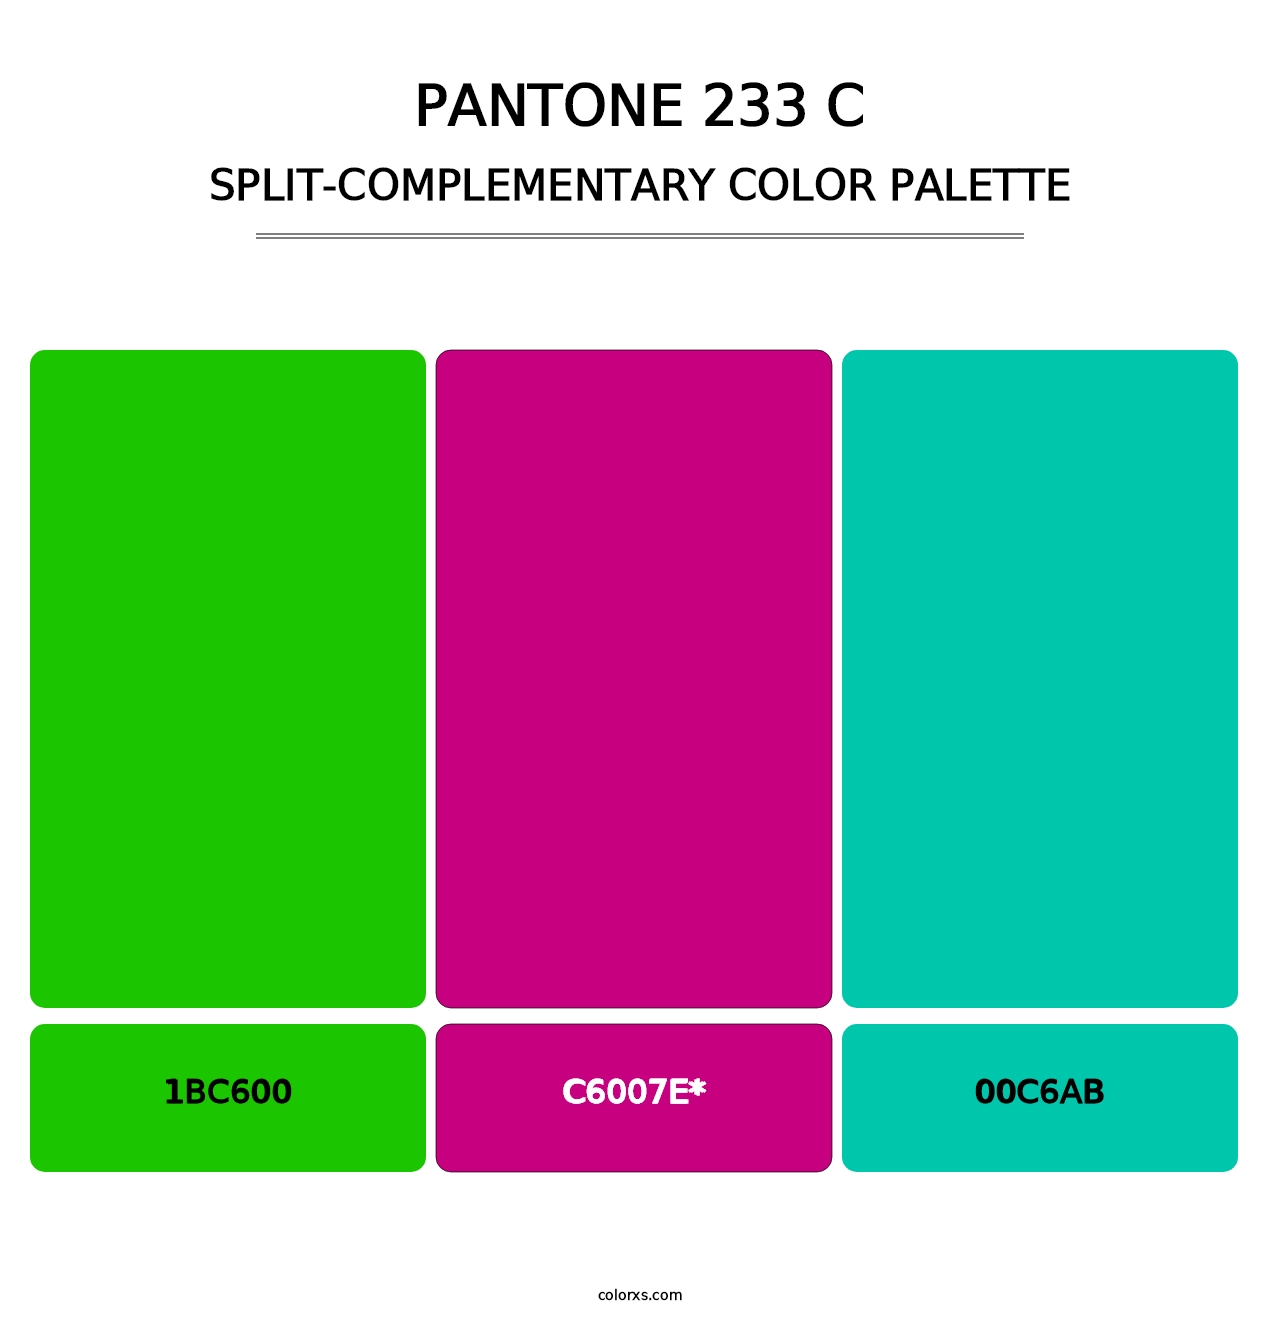 PANTONE 233 C - Split-Complementary Color Palette